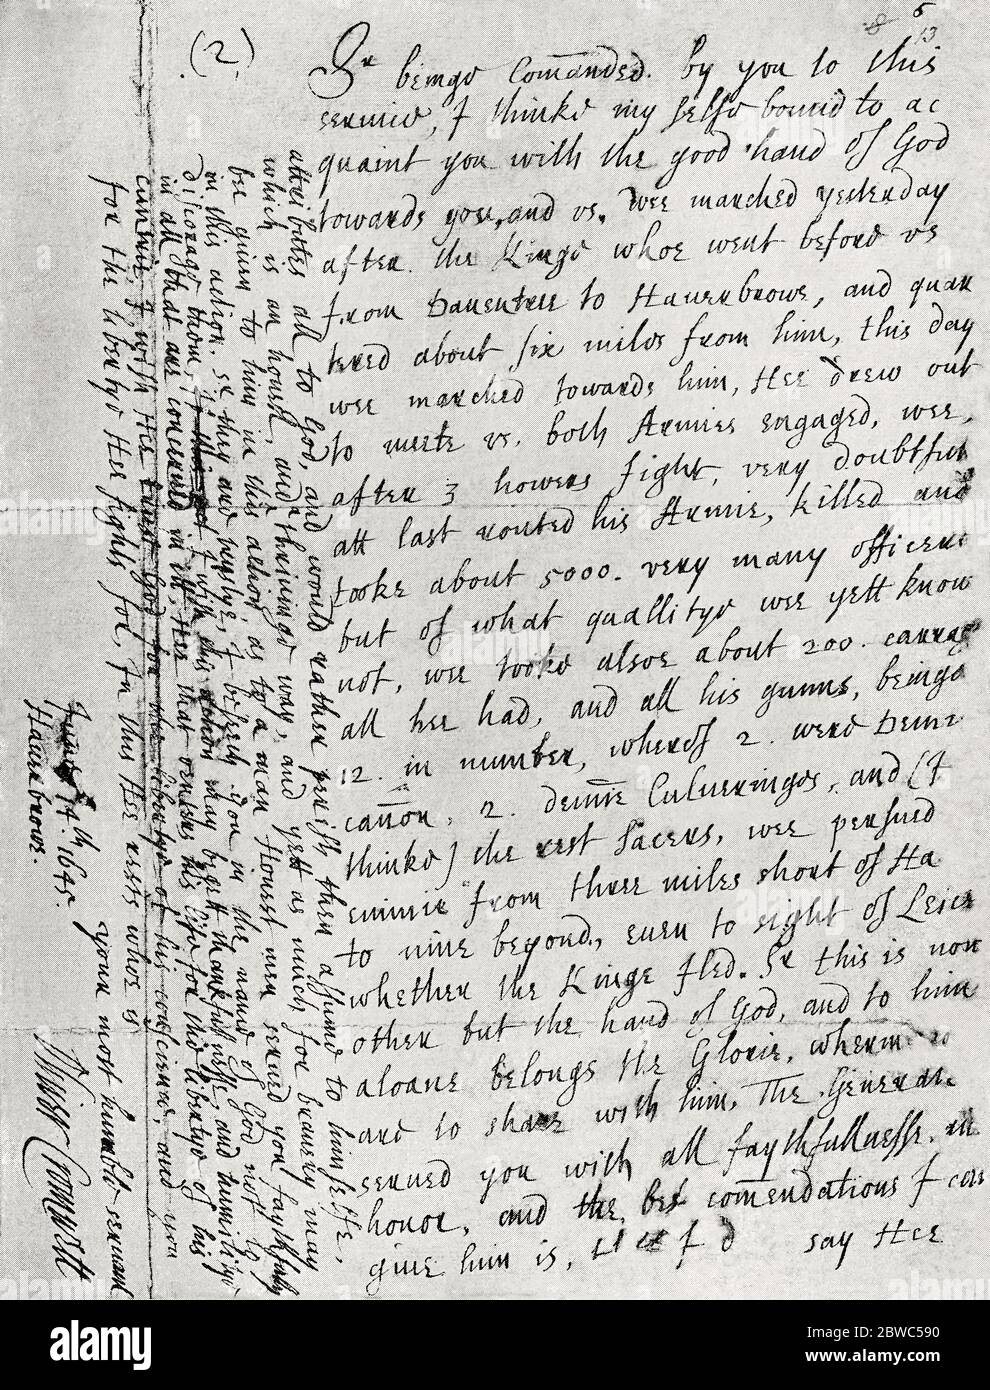 Faksimile eines Briefes von Olvier Cromwell an Speaker Lenthall, der den Sieg von Naseby berichtet. Datiert vom 14. Juni 1645, dem Tag der Schlacht. Aus Großbritannien und ihren Nachbarn, 1485 - 1688, veröffentlicht 1923. Stockfoto